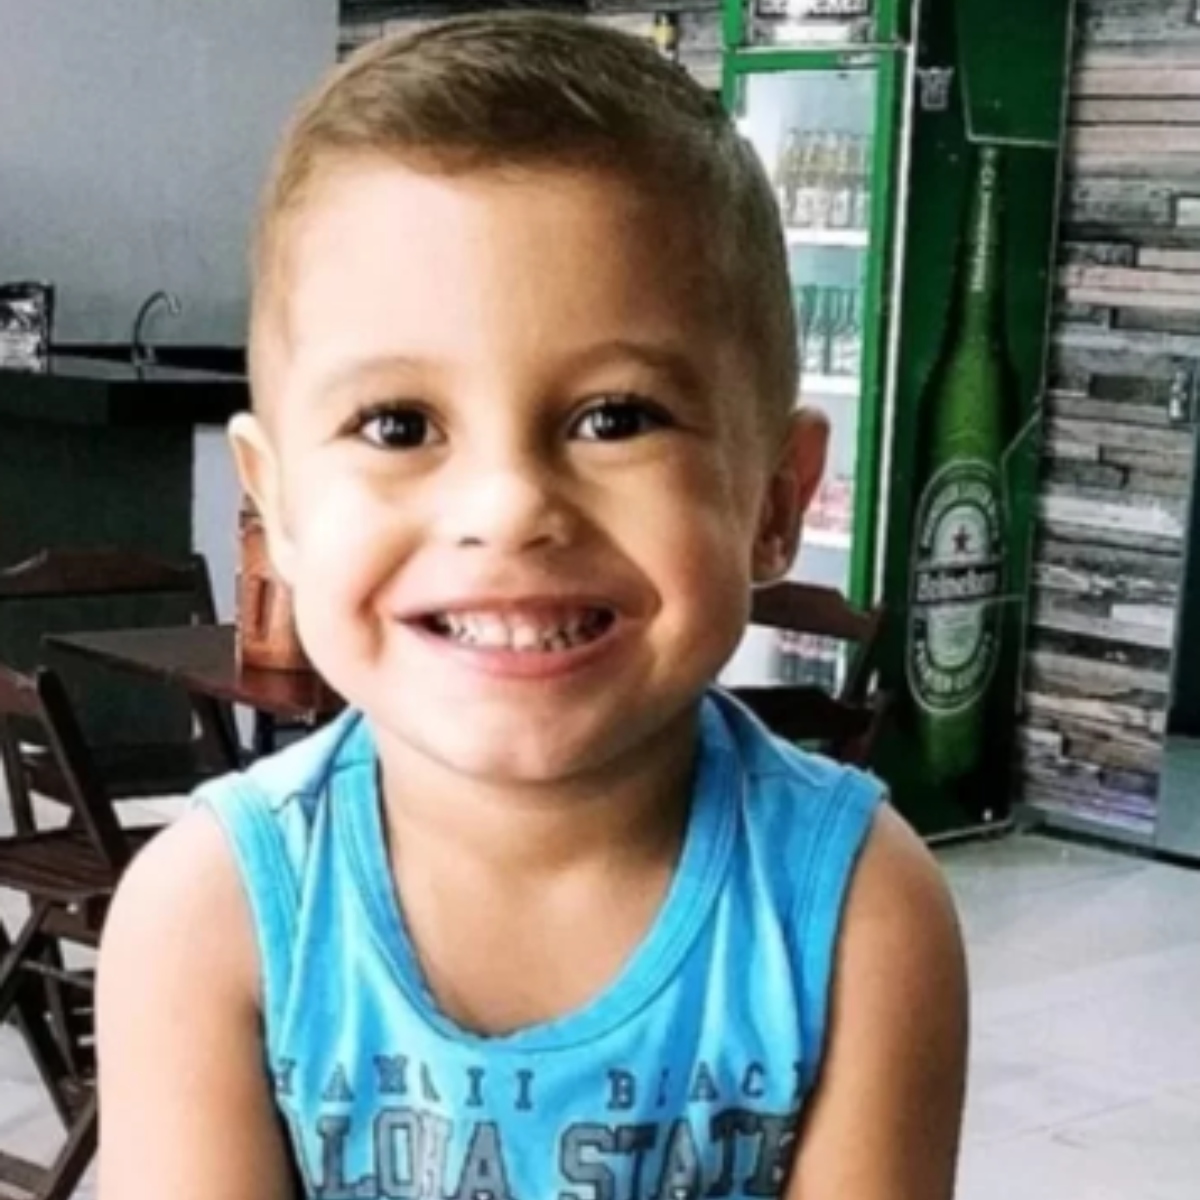  Morre menino que estava em coma há mais de 2 anos após afogamento em piscina 